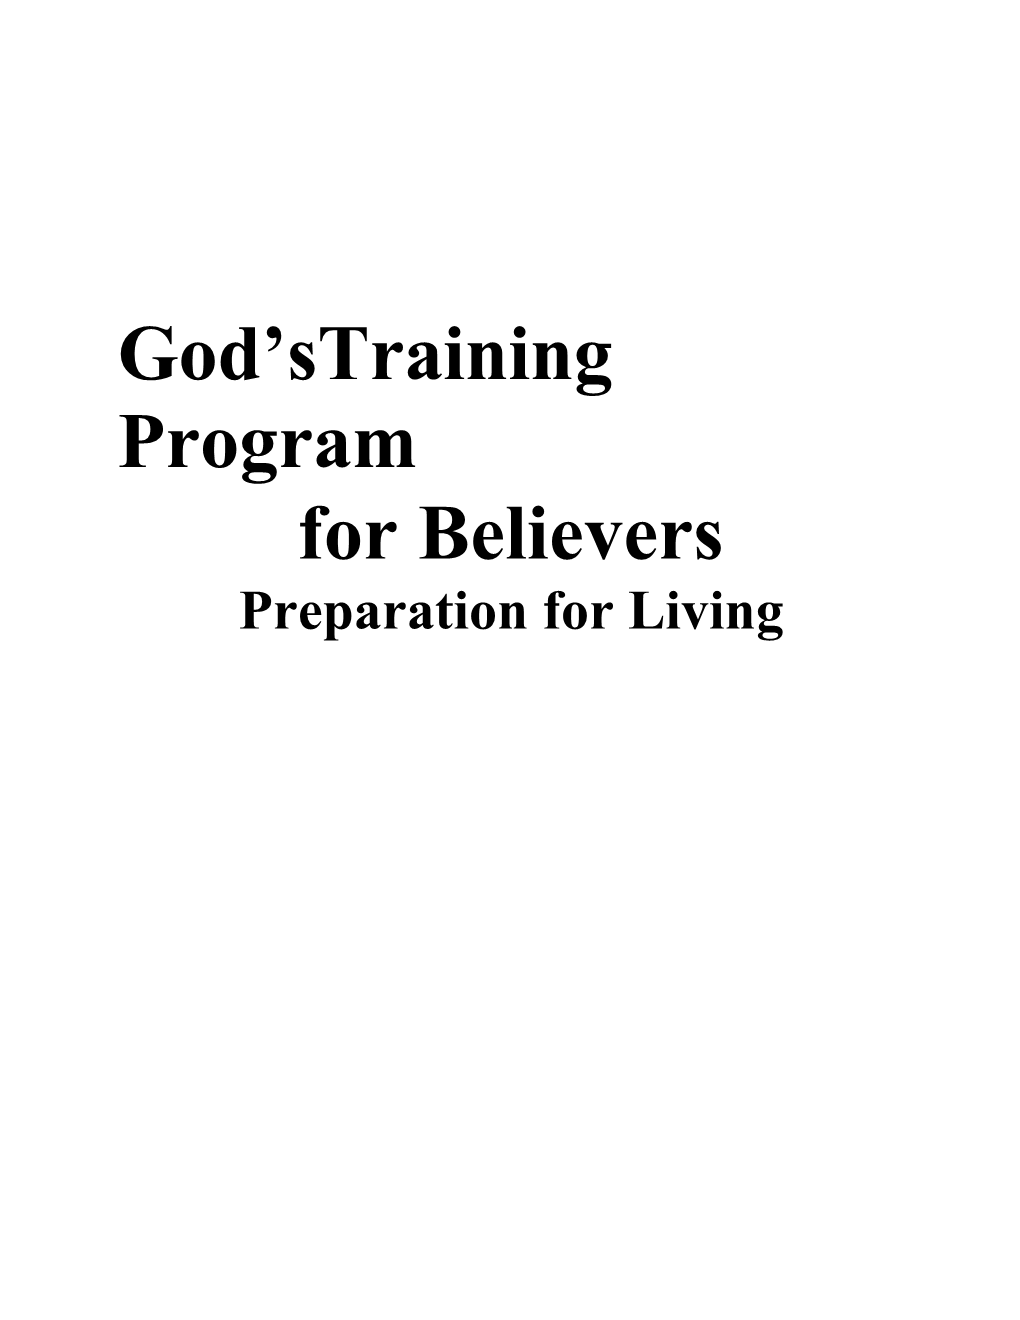 God Straining Program